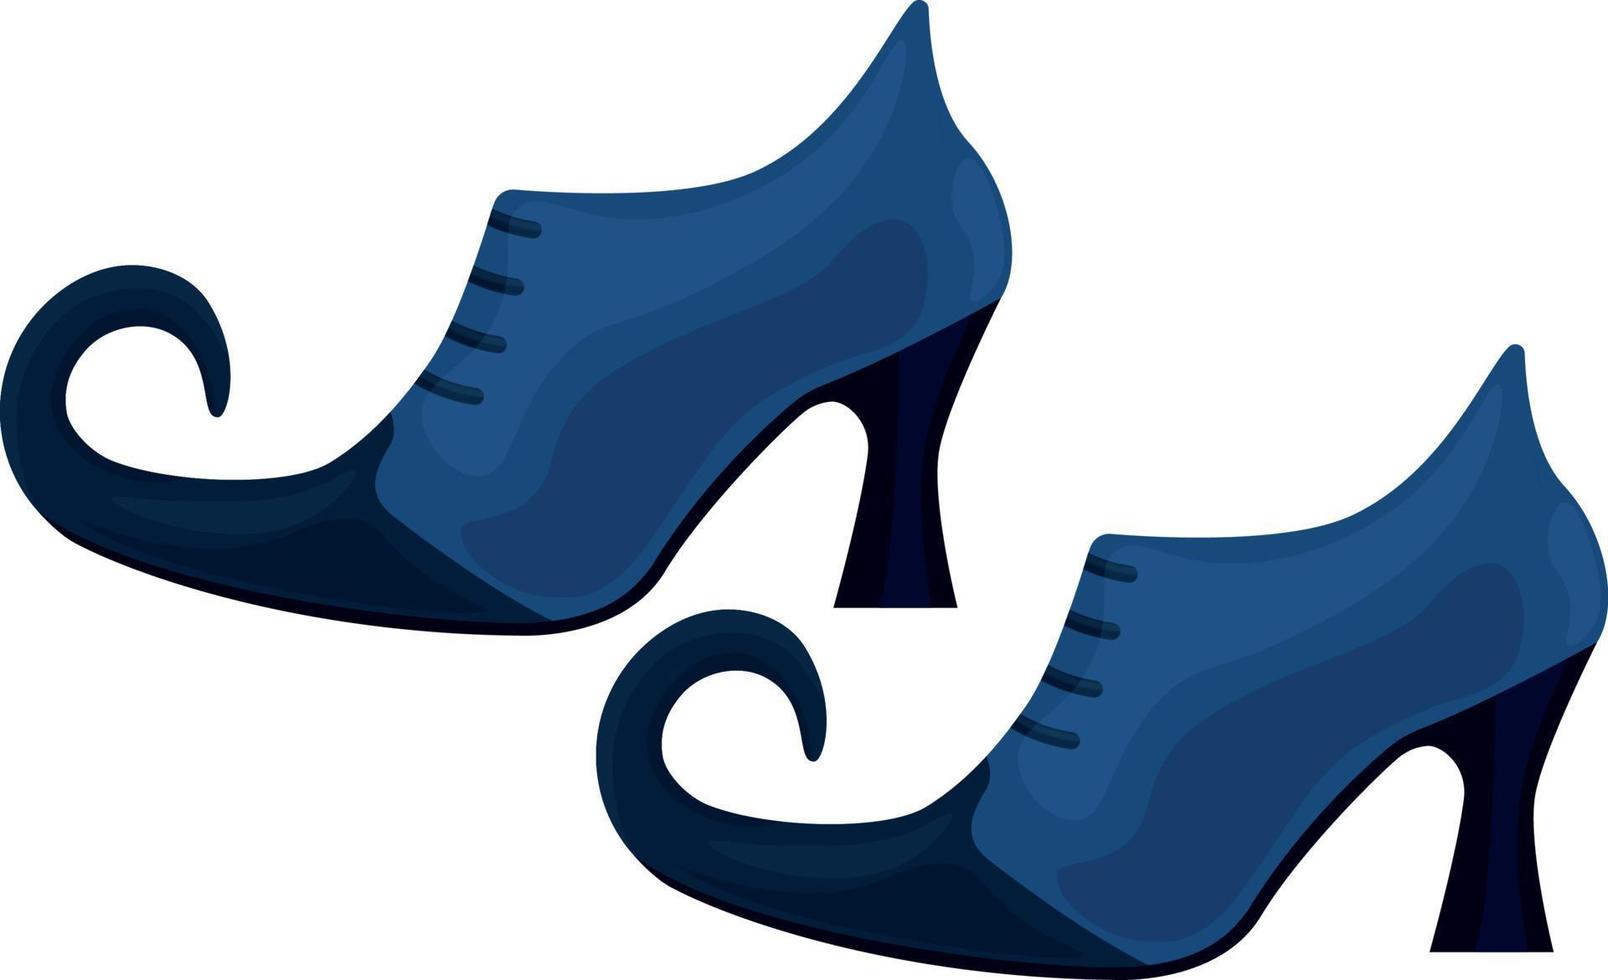 Hexenschuhe sind blau und schwarz mit spitzen Zehen. die schuhe der hexe, ein symbol von halloween. Vektor-Illustration isoliert auf weißem Hintergrund vektor